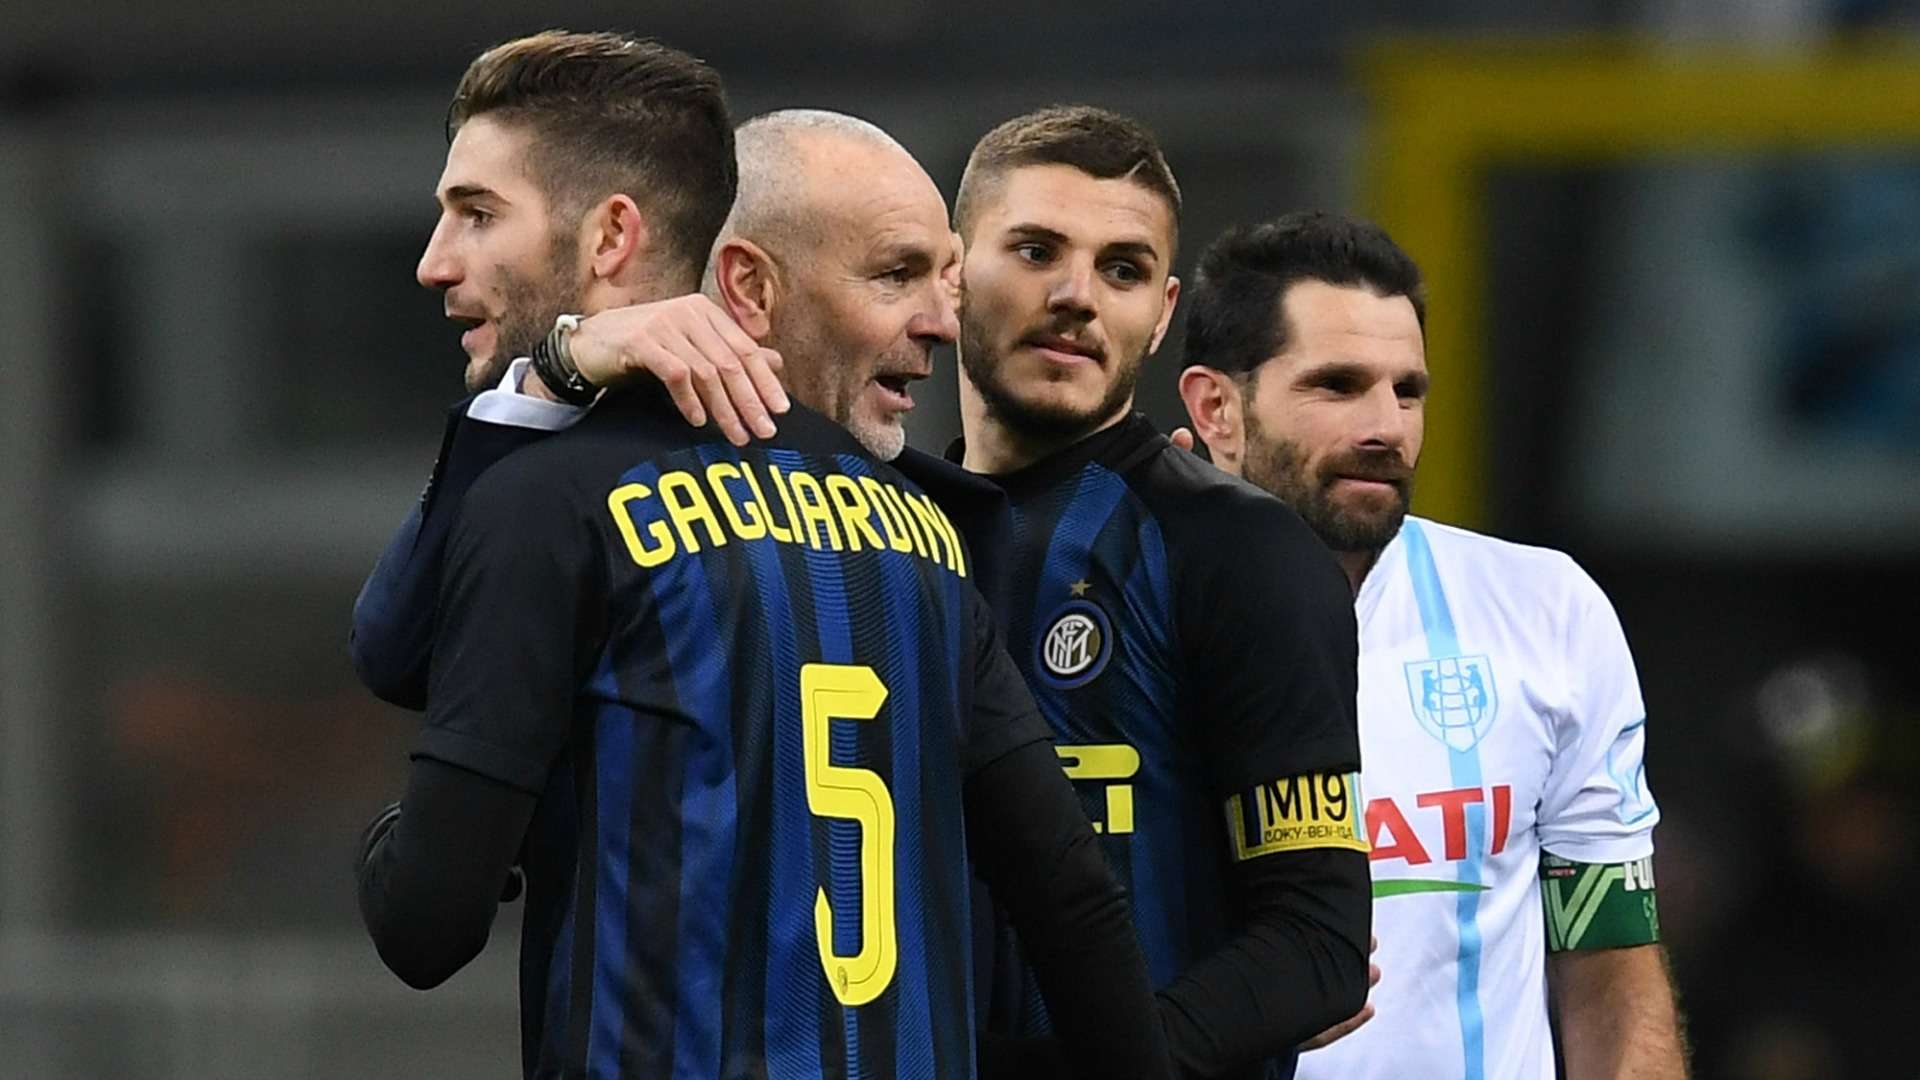 Roberto Gagliardini Stefano Pioli Mauro Icardi Inter Chievo Serie A